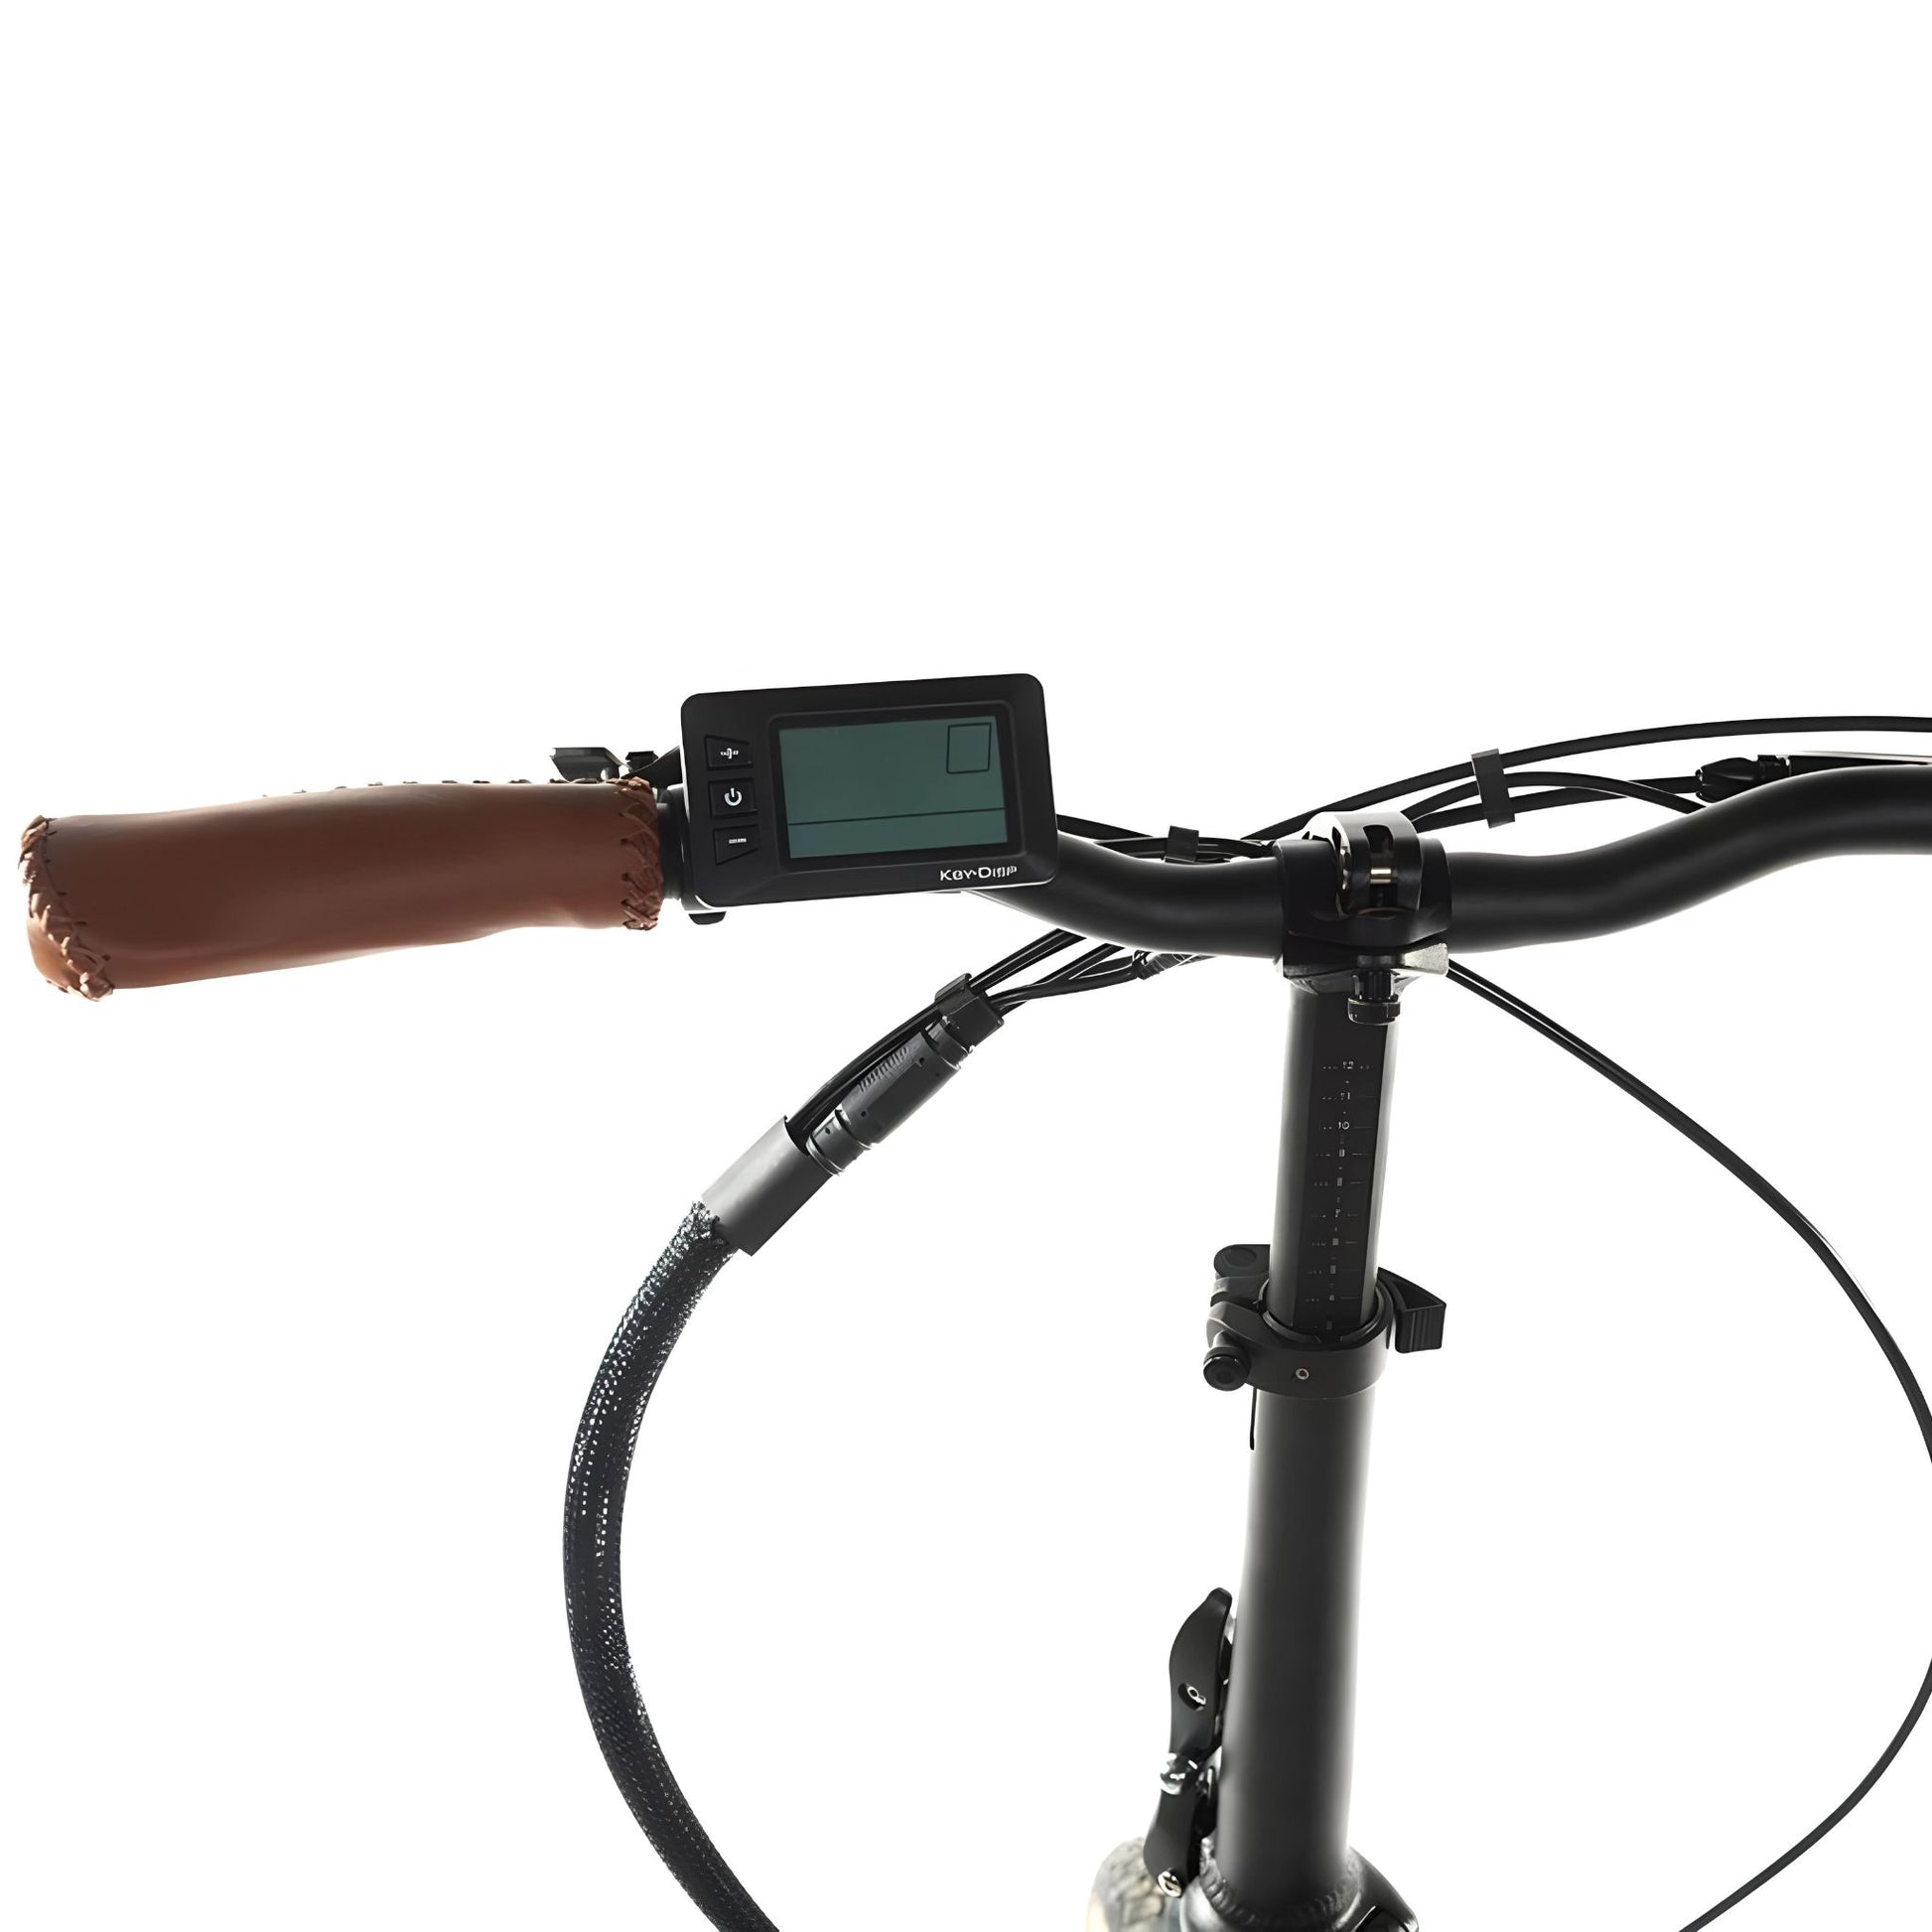 Handlebar display of Geobike Carat 2.0 E-Bike.